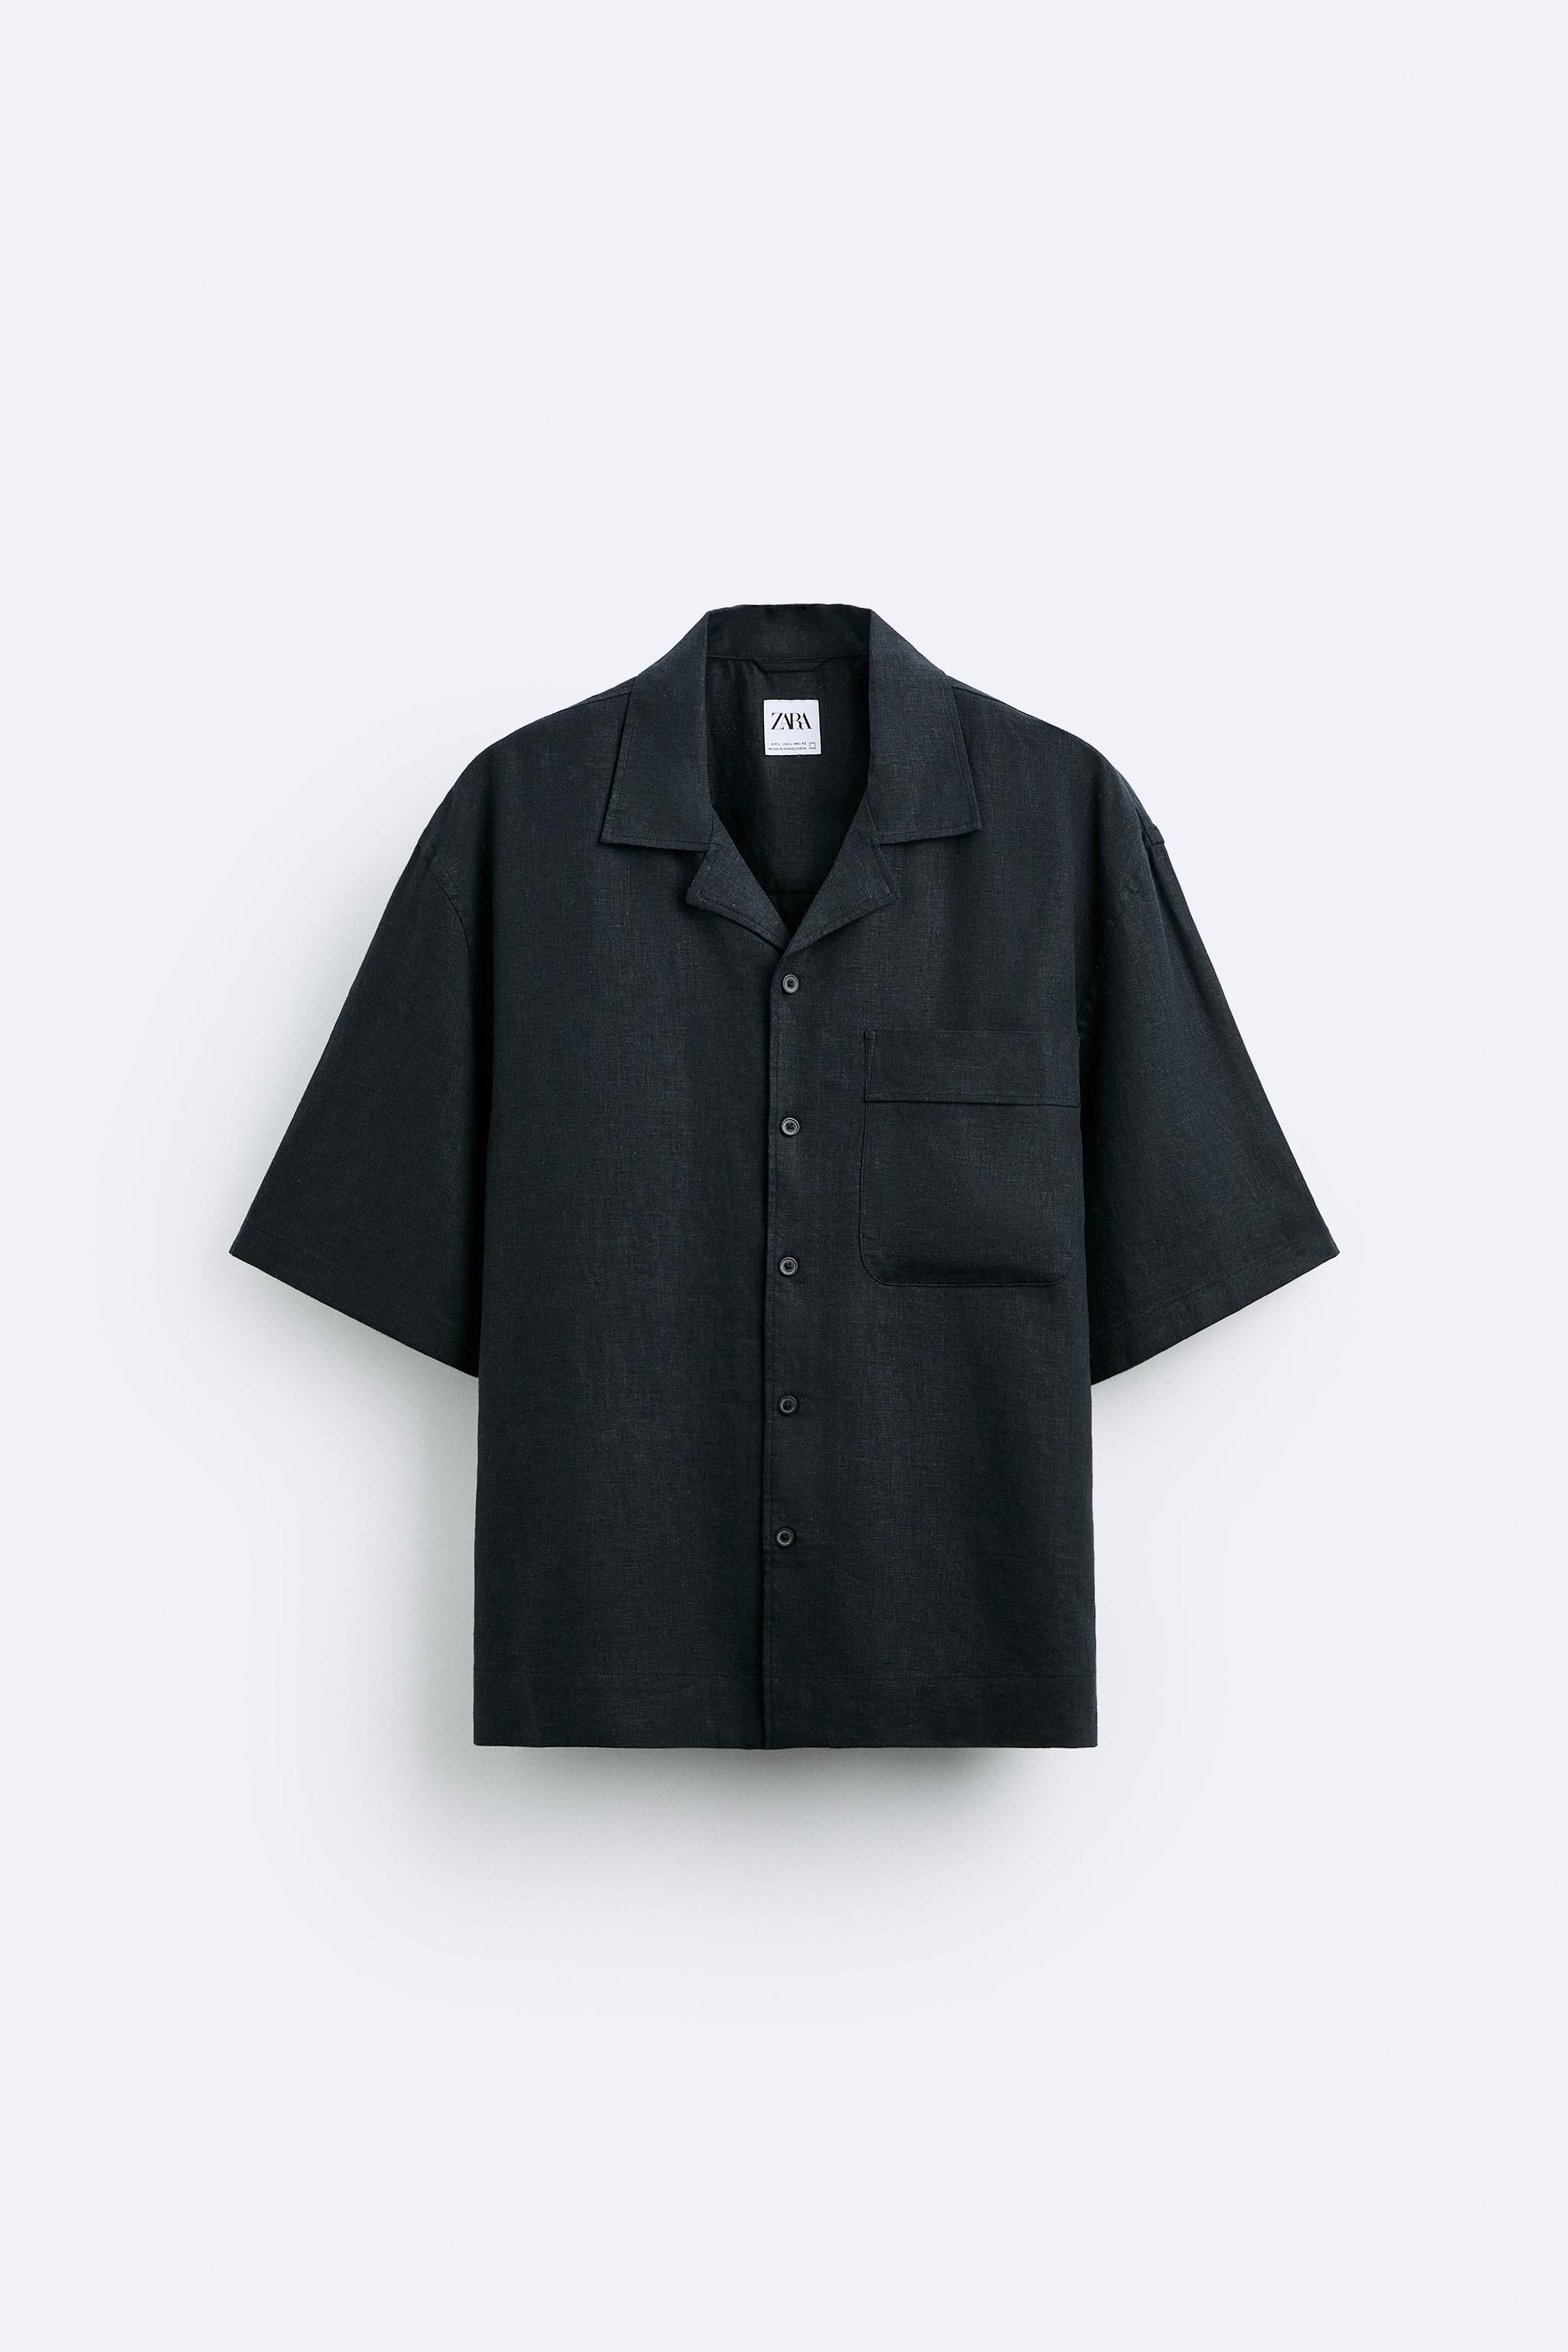 Рубашка Zara Viscose/linen Blend, черный рубашка zara viscose linen blend черный